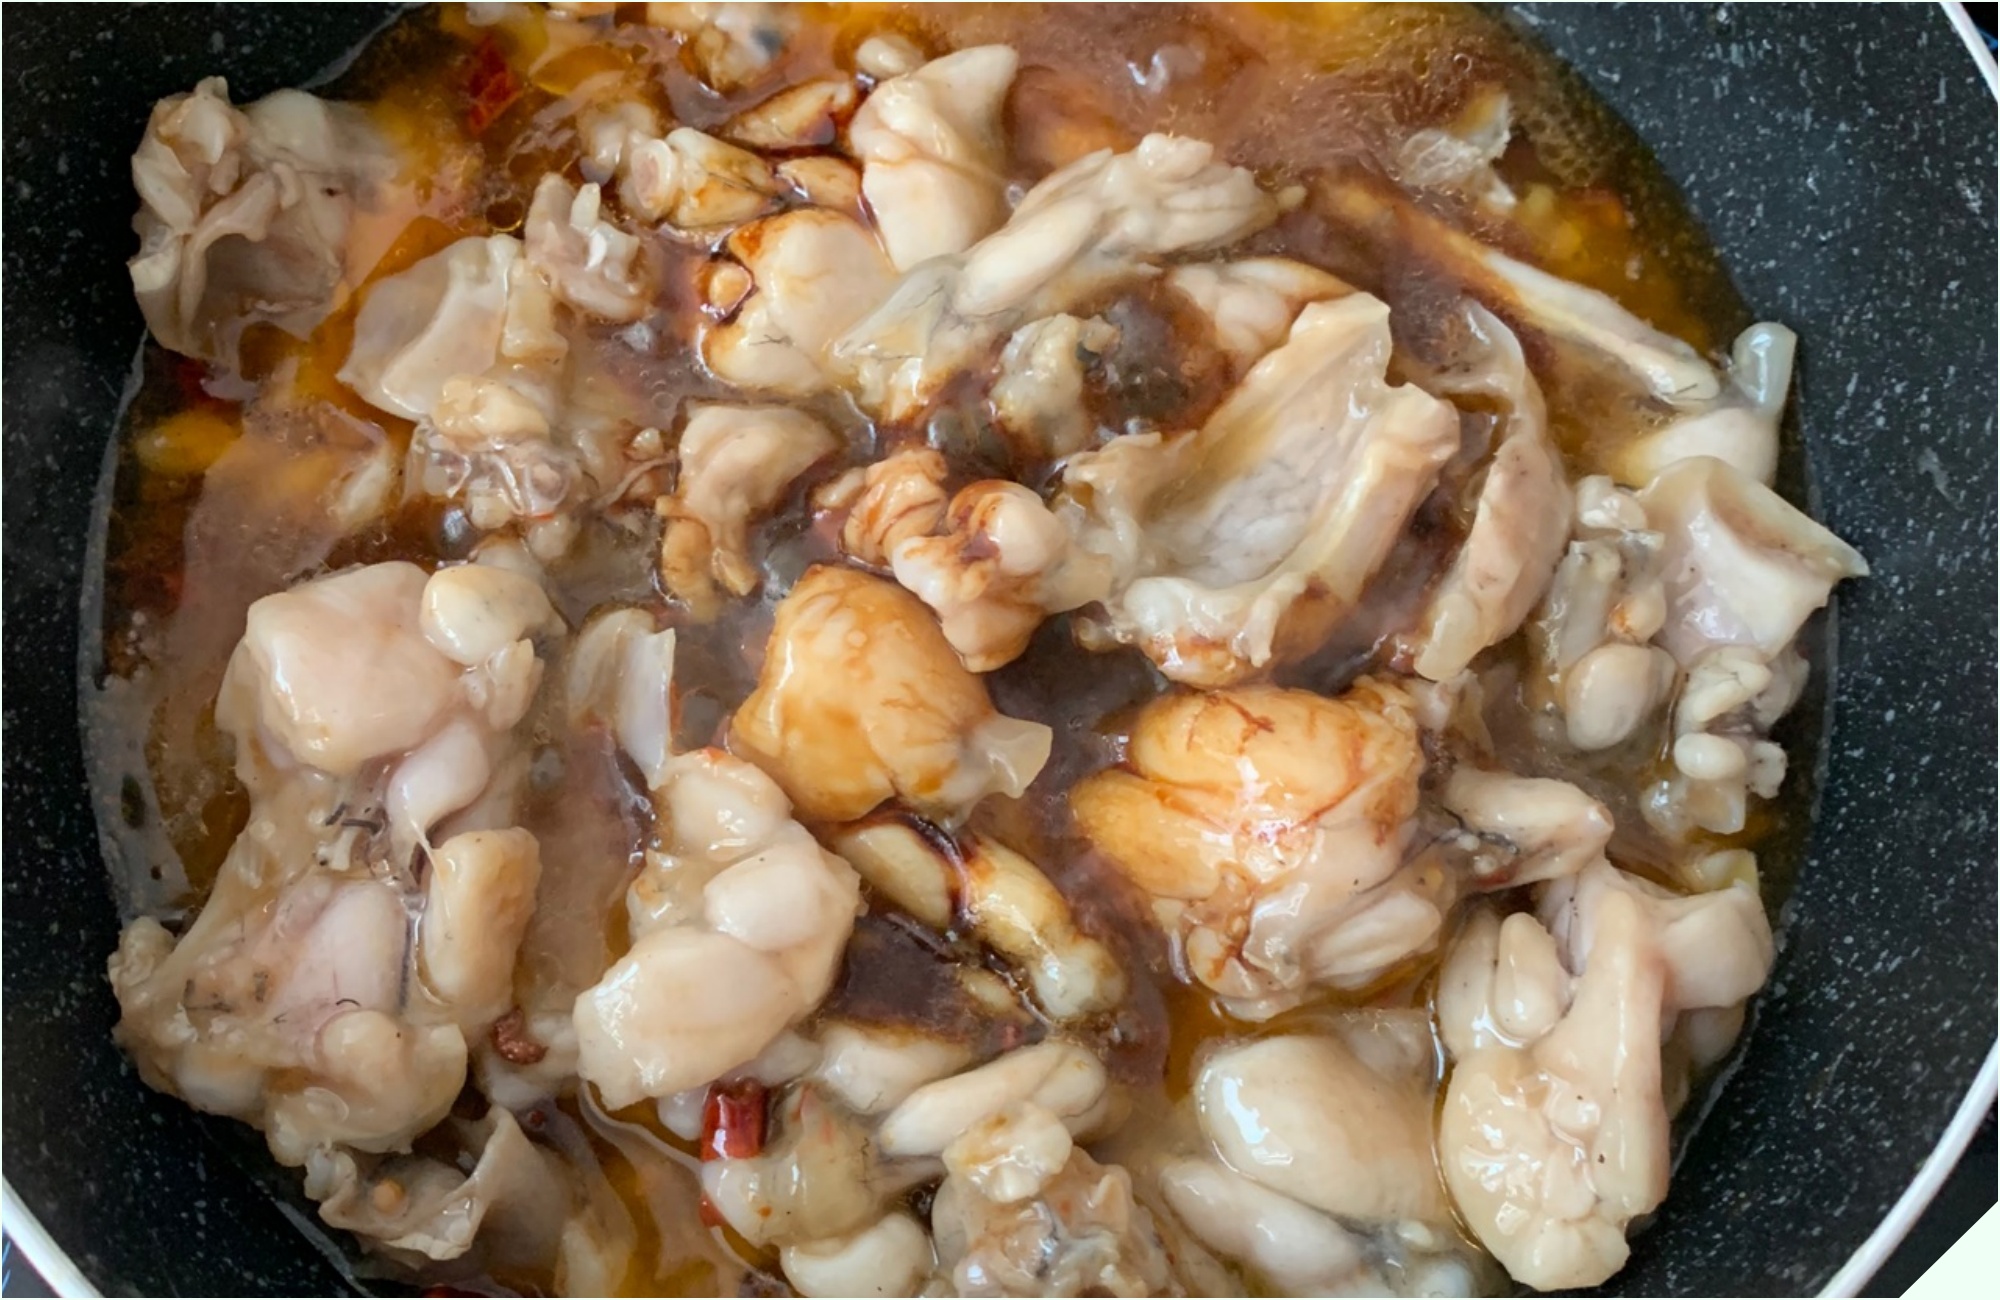 Đi chợ gặp loại thịt được ví như “vị thuốc mùa đông” mua về nấu cùng quả dài ngoằng thành món cay cay, lớn nhỏ - Ảnh 16.